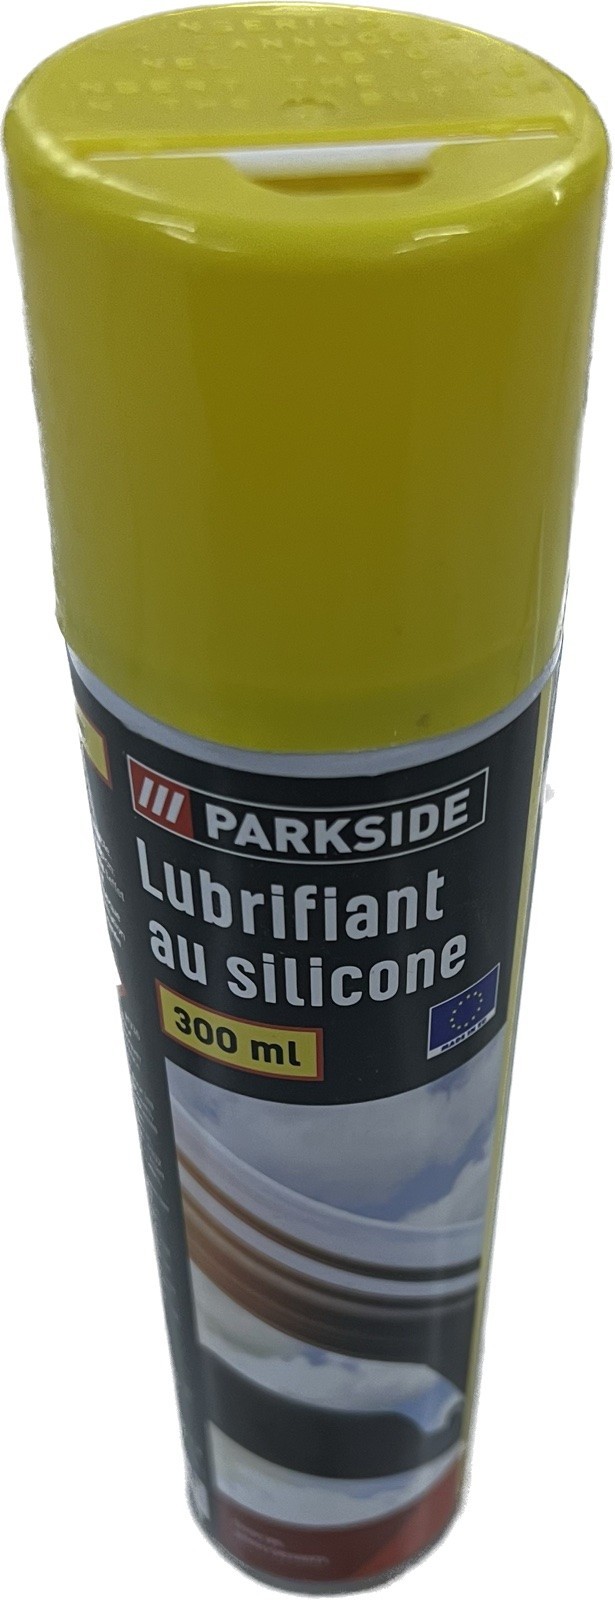 Lubrifiant silicone Parkside 300ml protection plastique